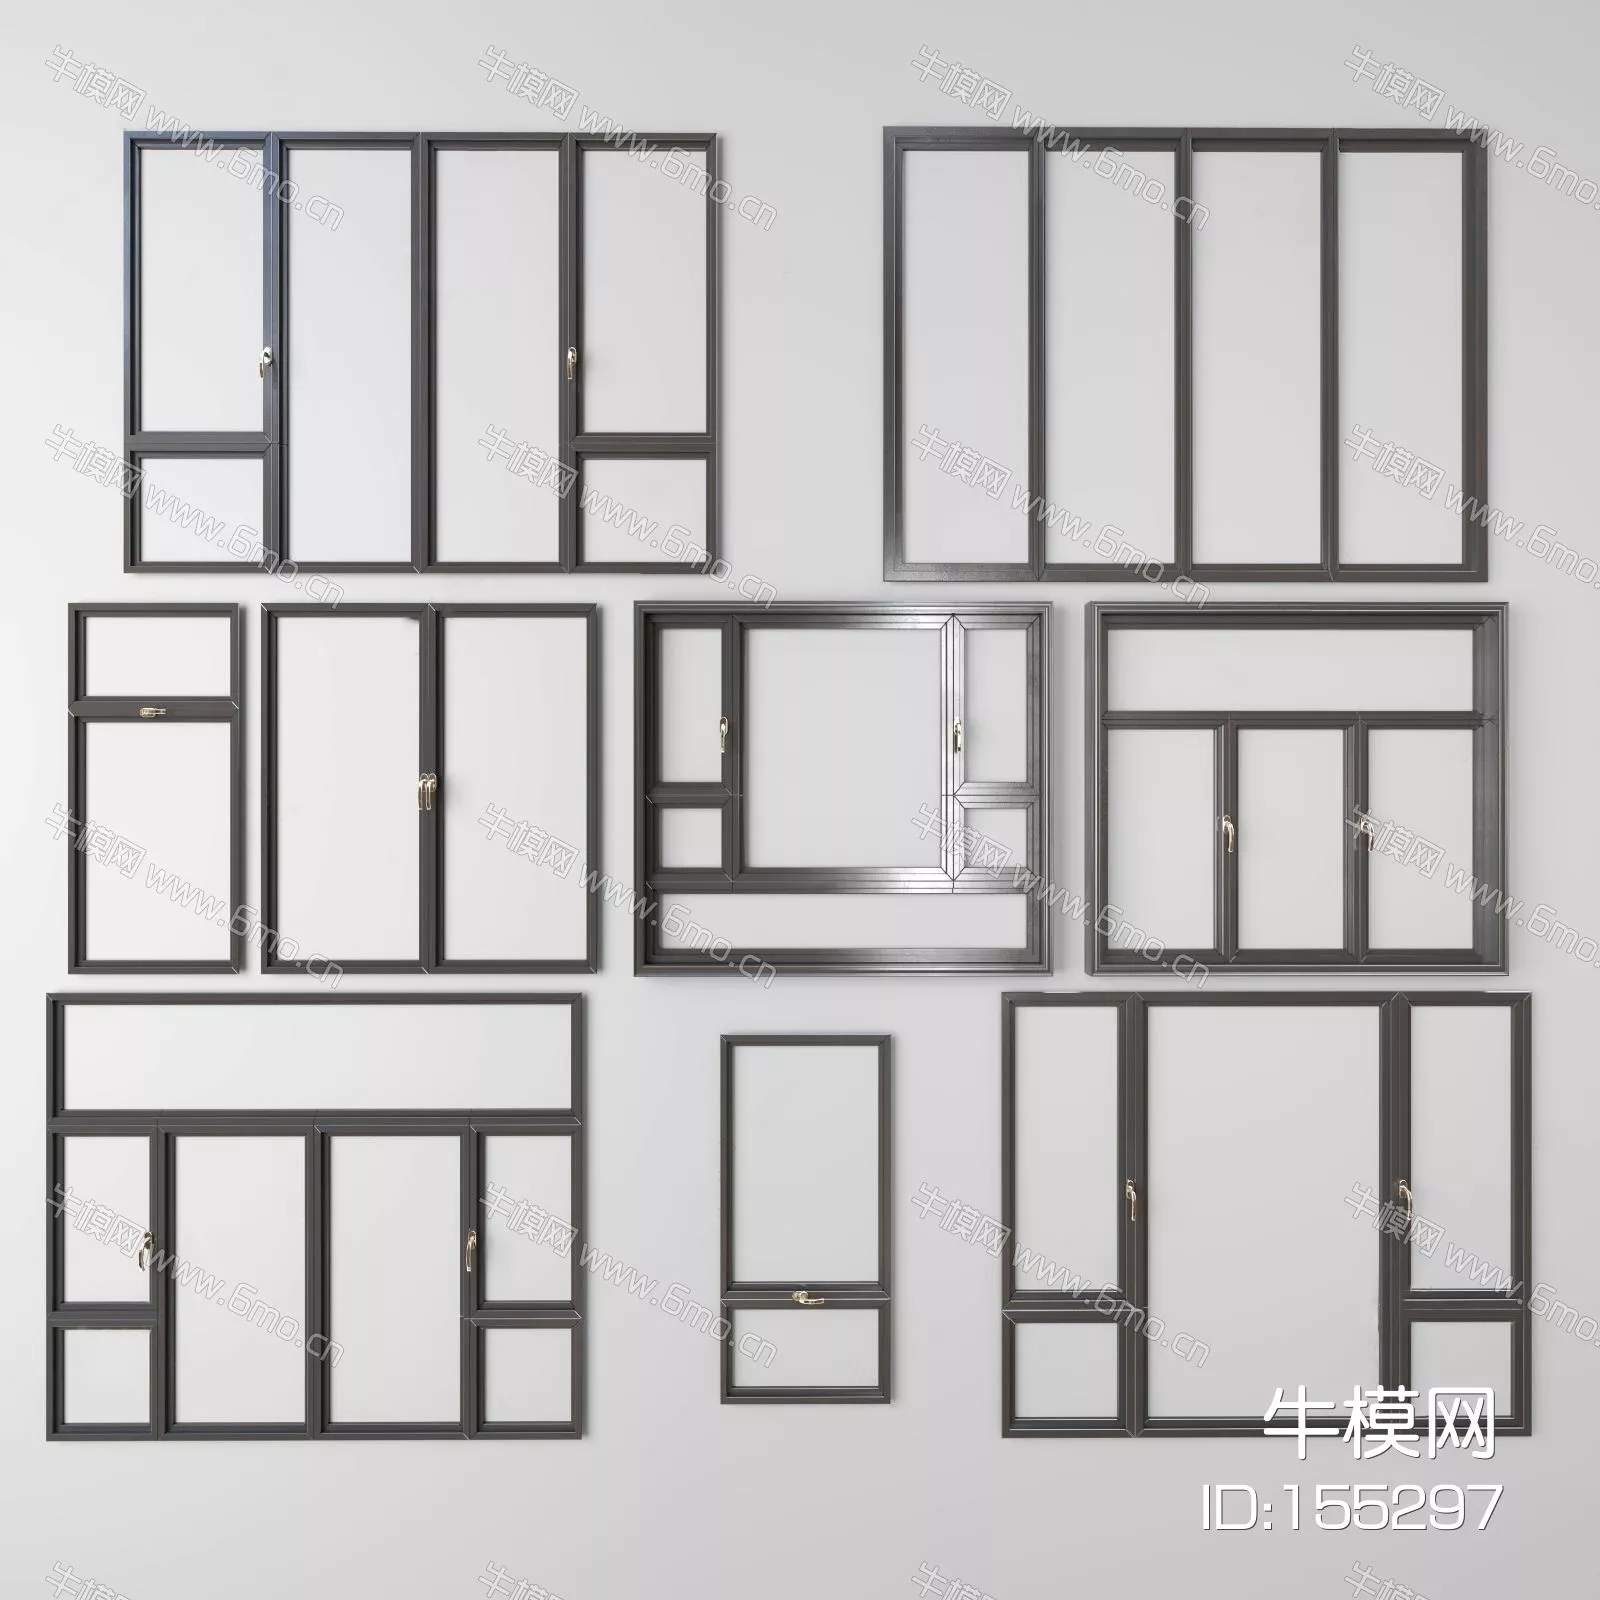 MODERN DOOR AND WINDOWS - SKETCHUP 3D MODEL - VRAY - 155297